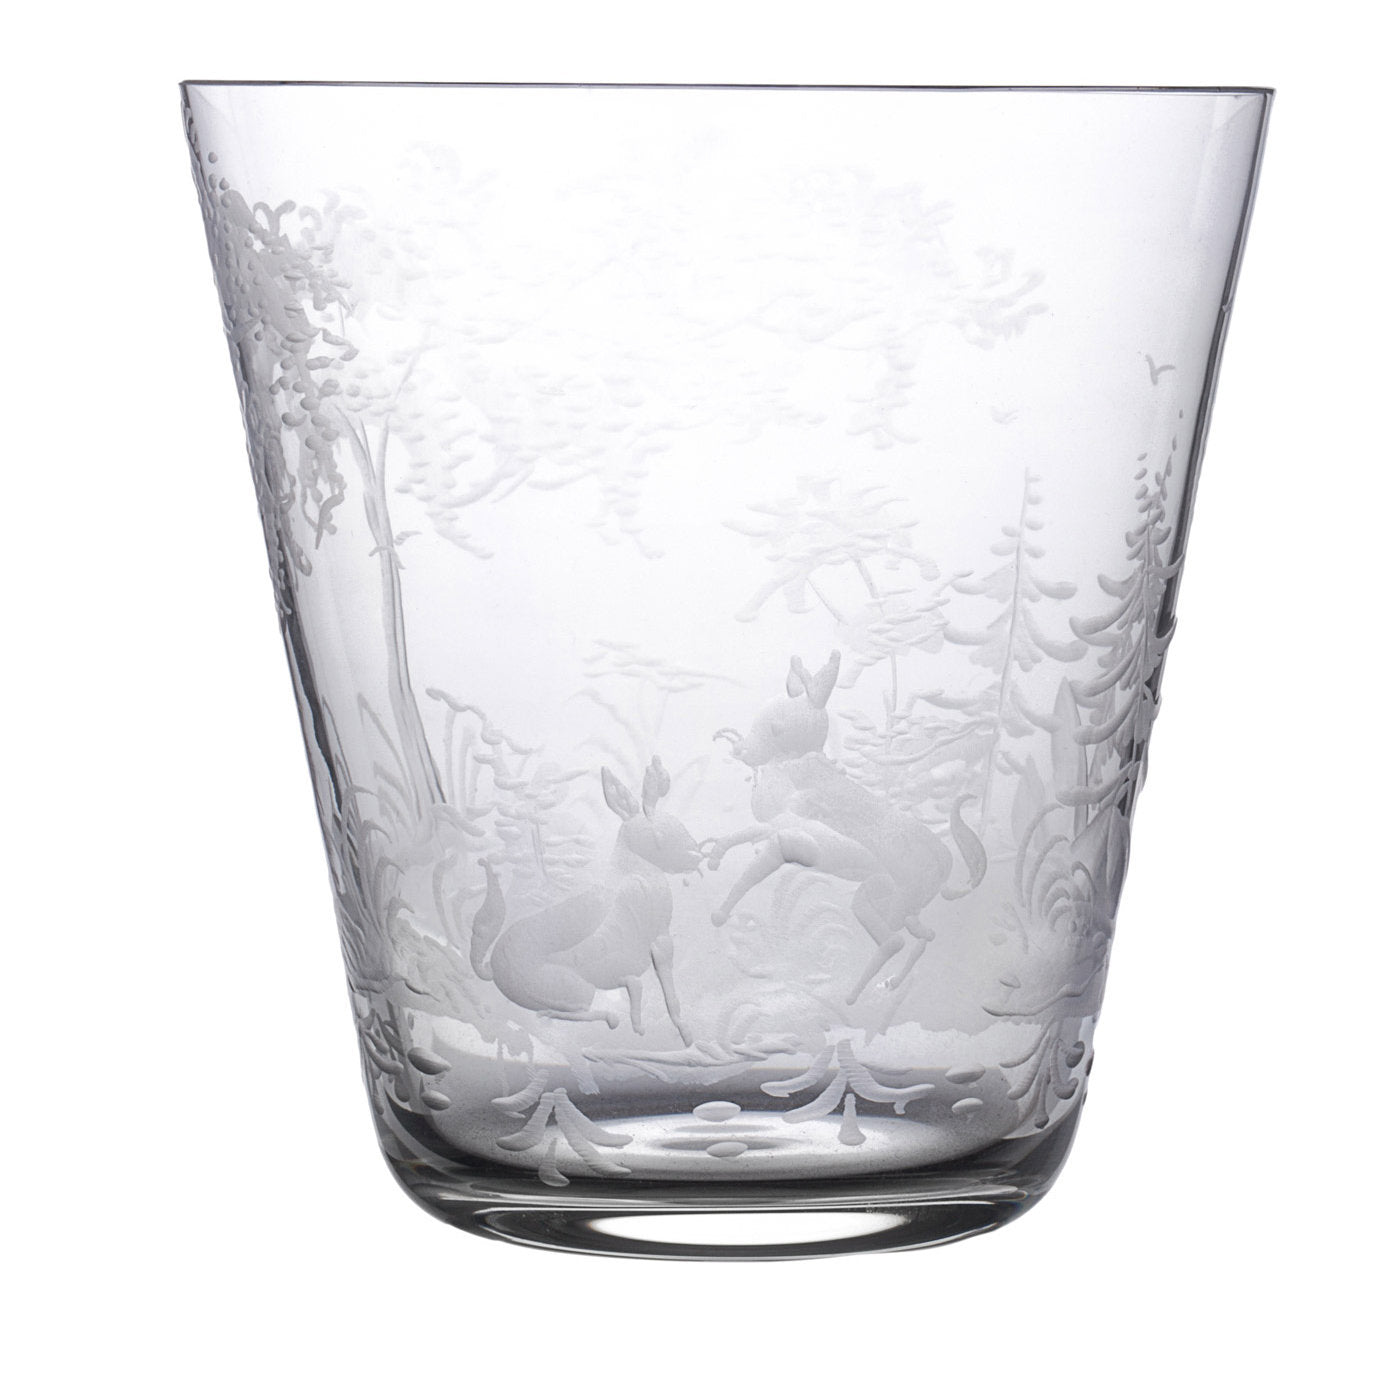 Juego de 6 vasos de cristal Foresta - Vista alternativa 1